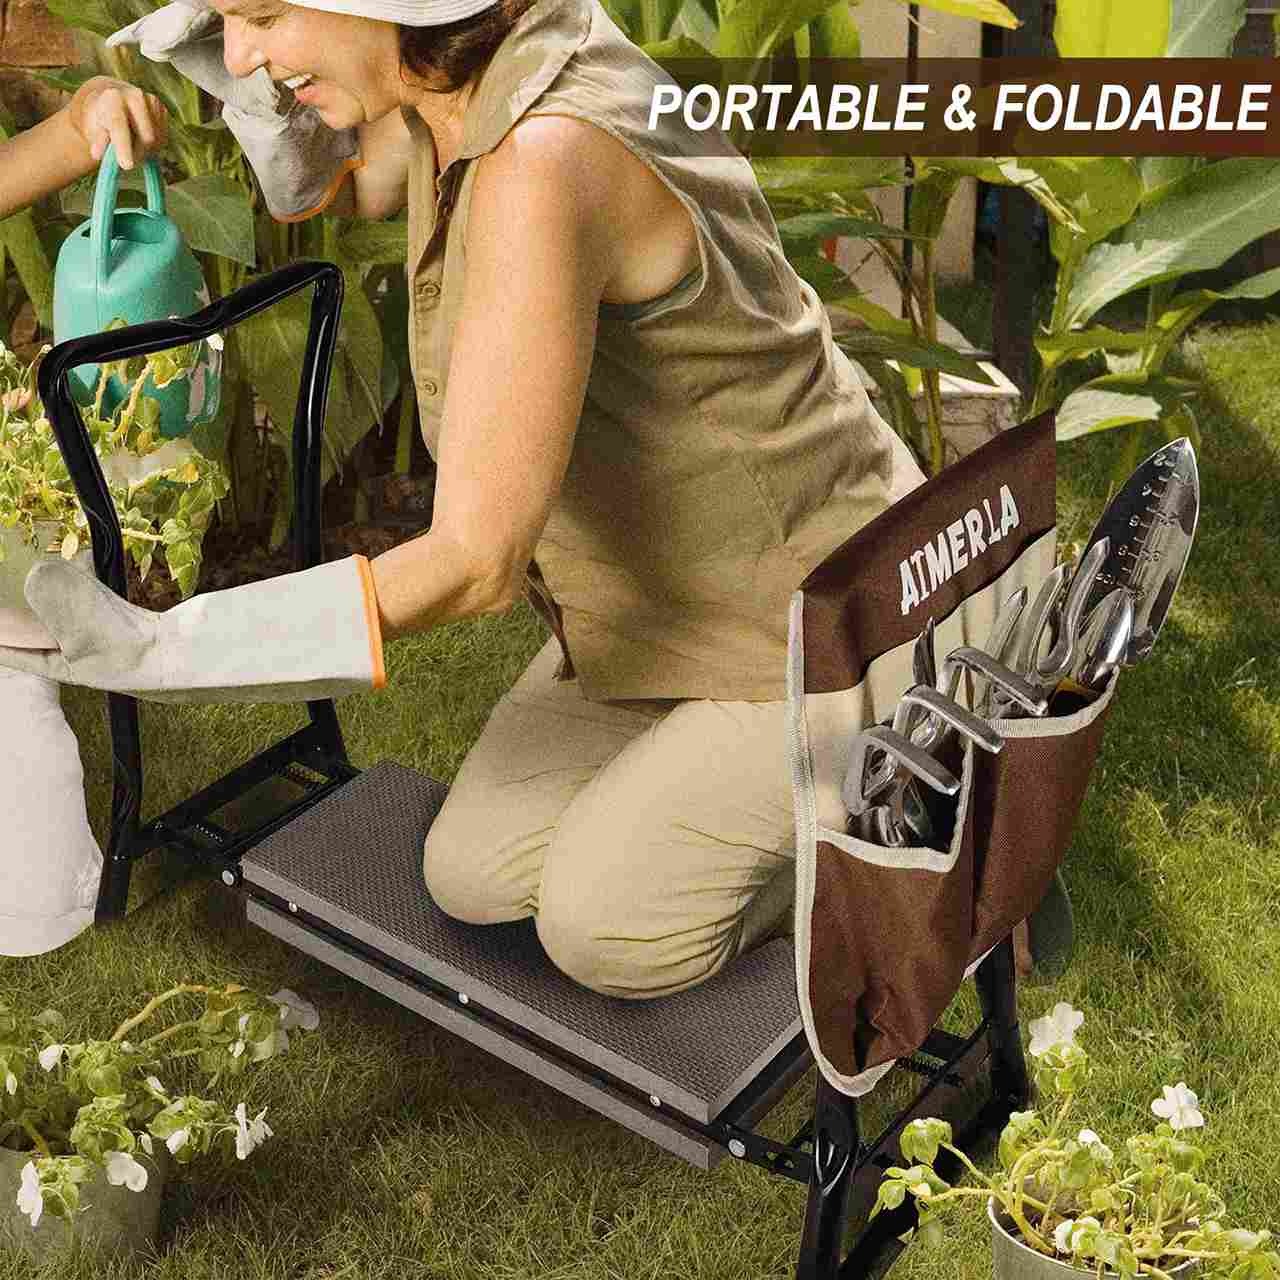 Aimerla K1 Foldable Garden Kneeler Seat